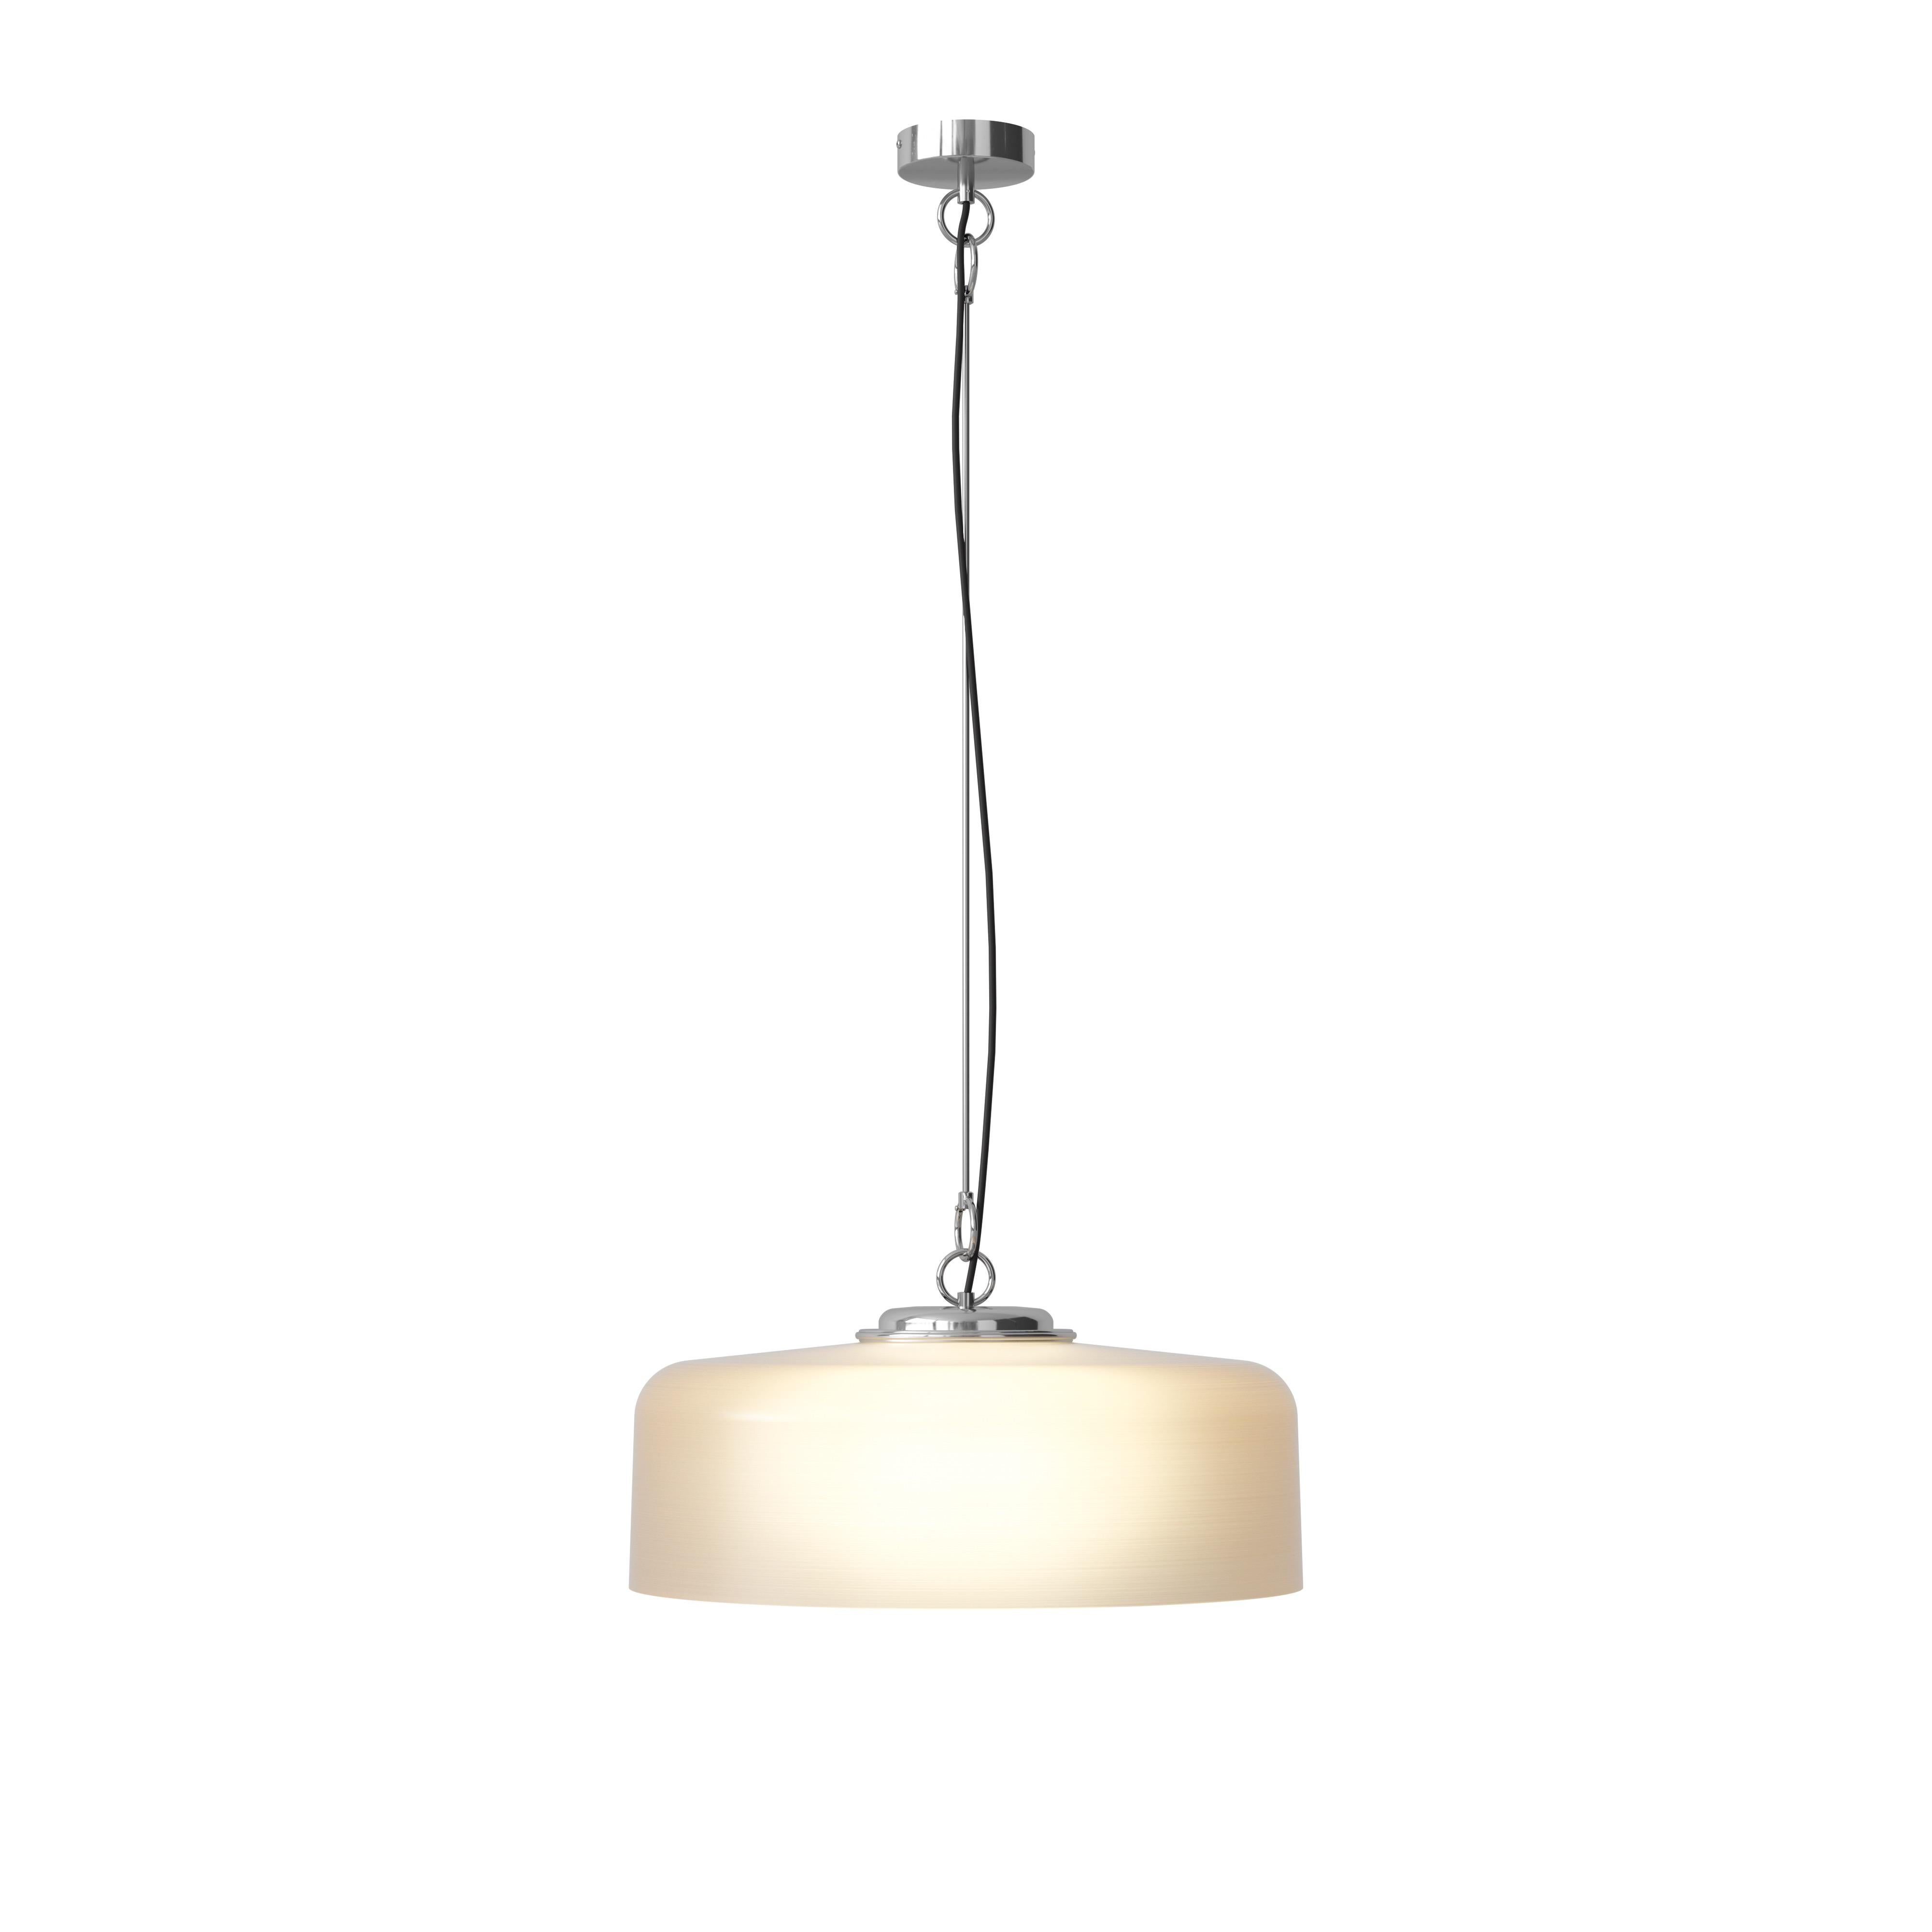 Franco Albini & Franca Helg 'Model 2050' Suspension Lamp in Smoke for Astep For Sale 6